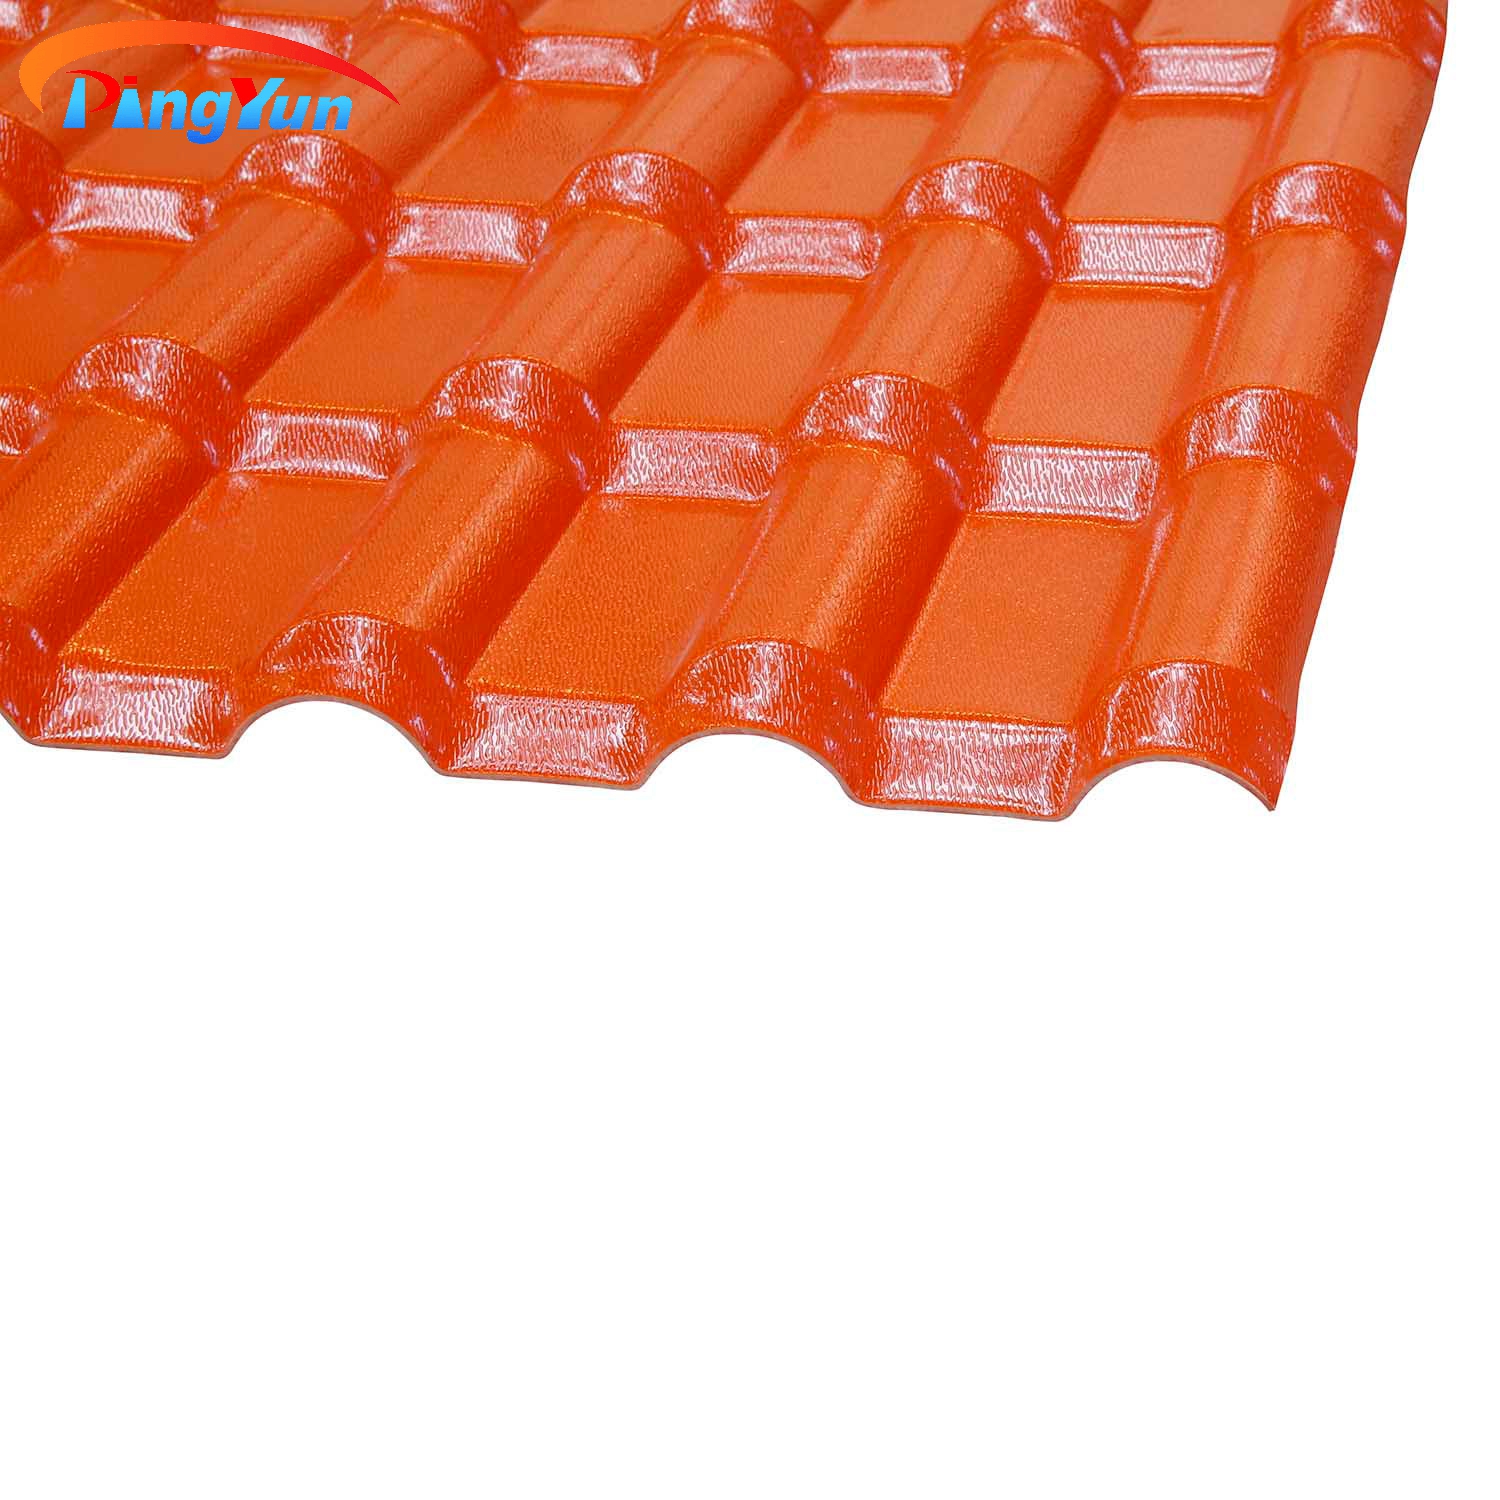 Tuile de toit en PVC en plastique rouge brique de maison résidentielle